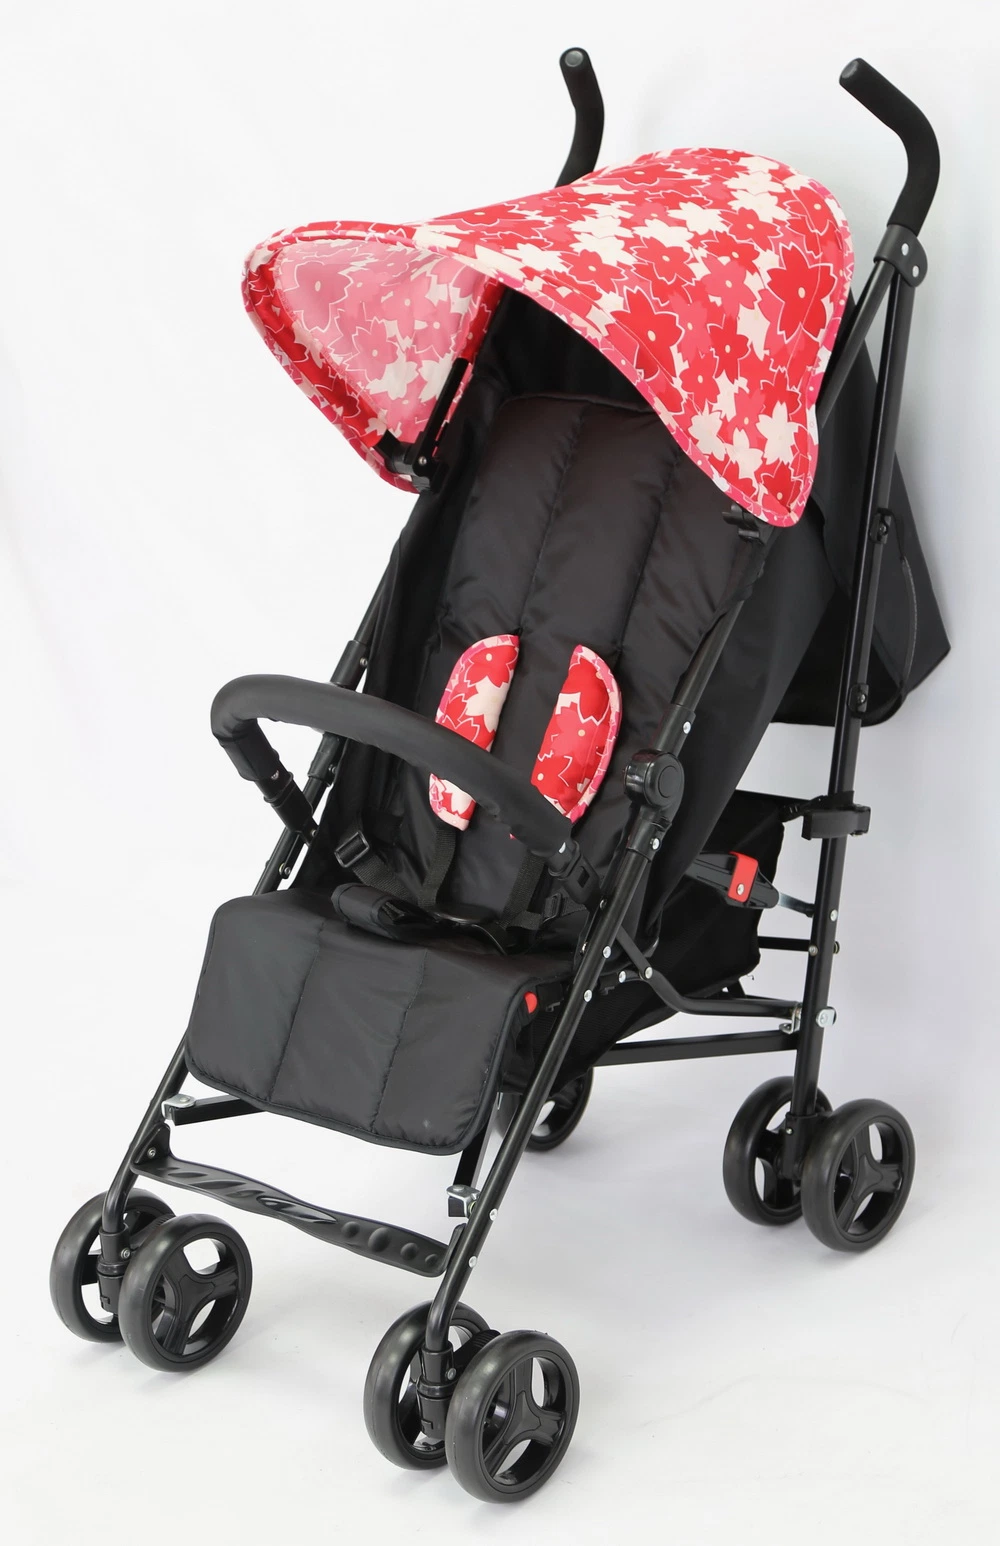 Coolkids S08f горячие продажи детского коляски легкий детский зонтик Слинге Stroller